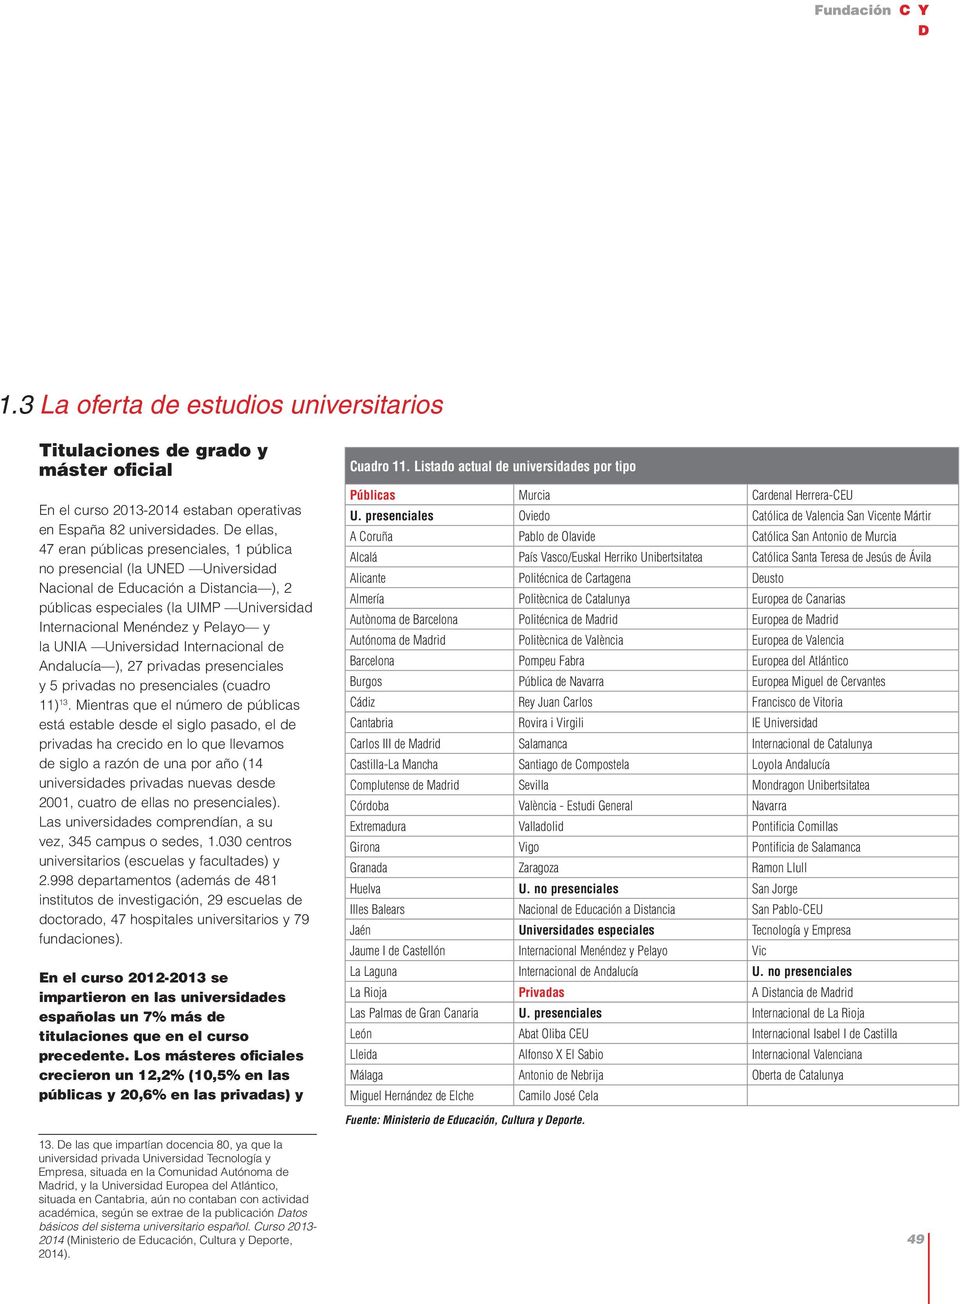 la UNIA Universidad Internacional de Andalucía ), 27 privadas presenciales y 5 privadas no presenciales (cuadro 11) 13.